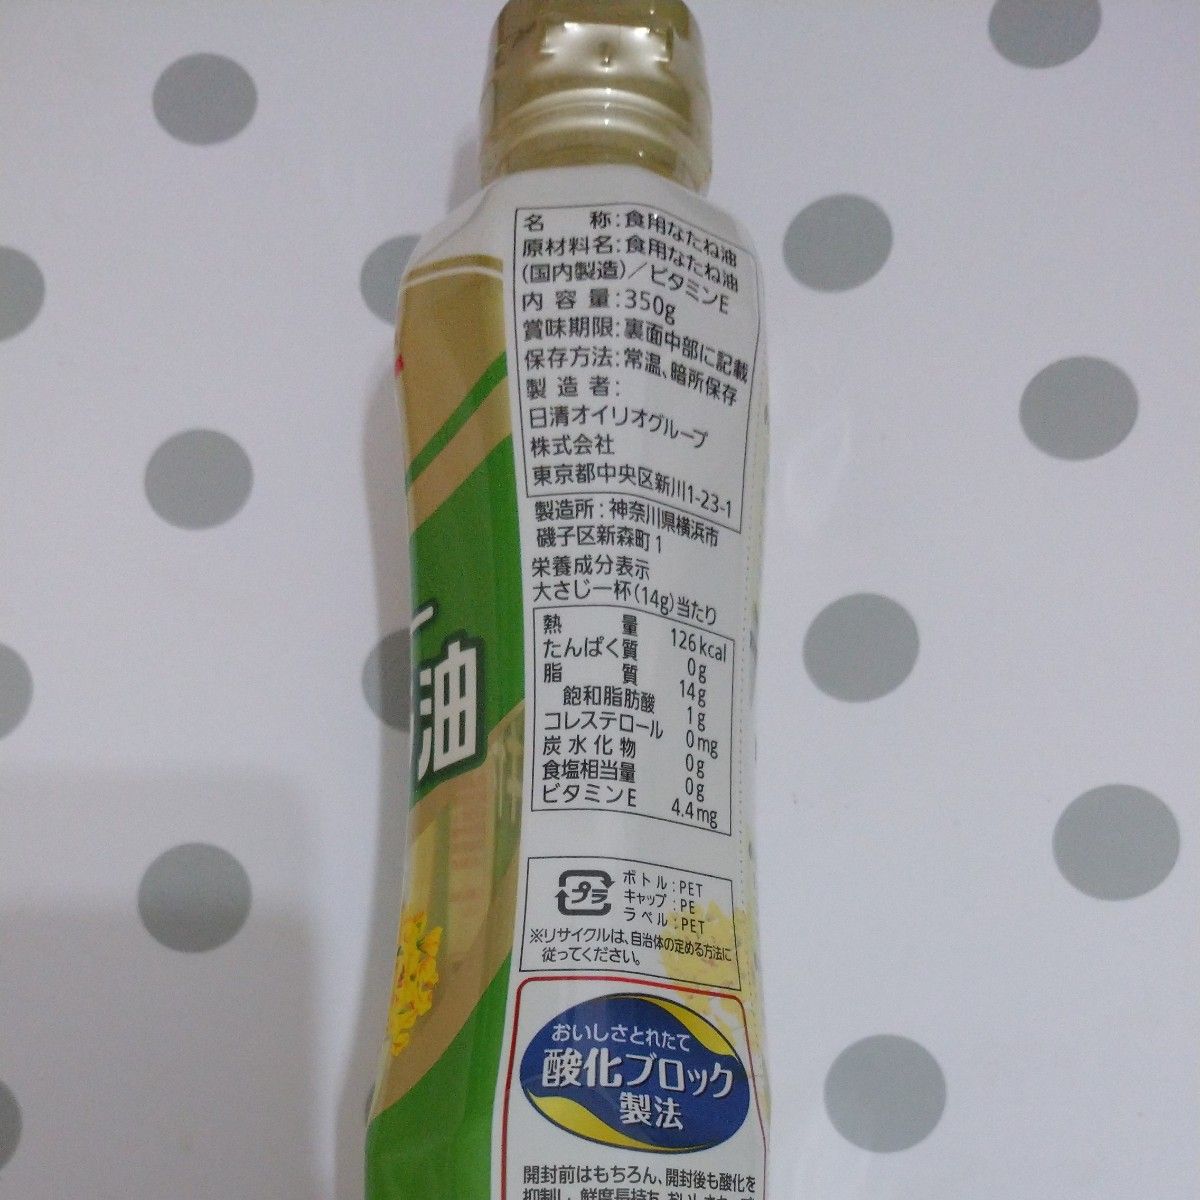 日清オイリオ【 食用油3本セット】 キャノーラ油 ベジオイル